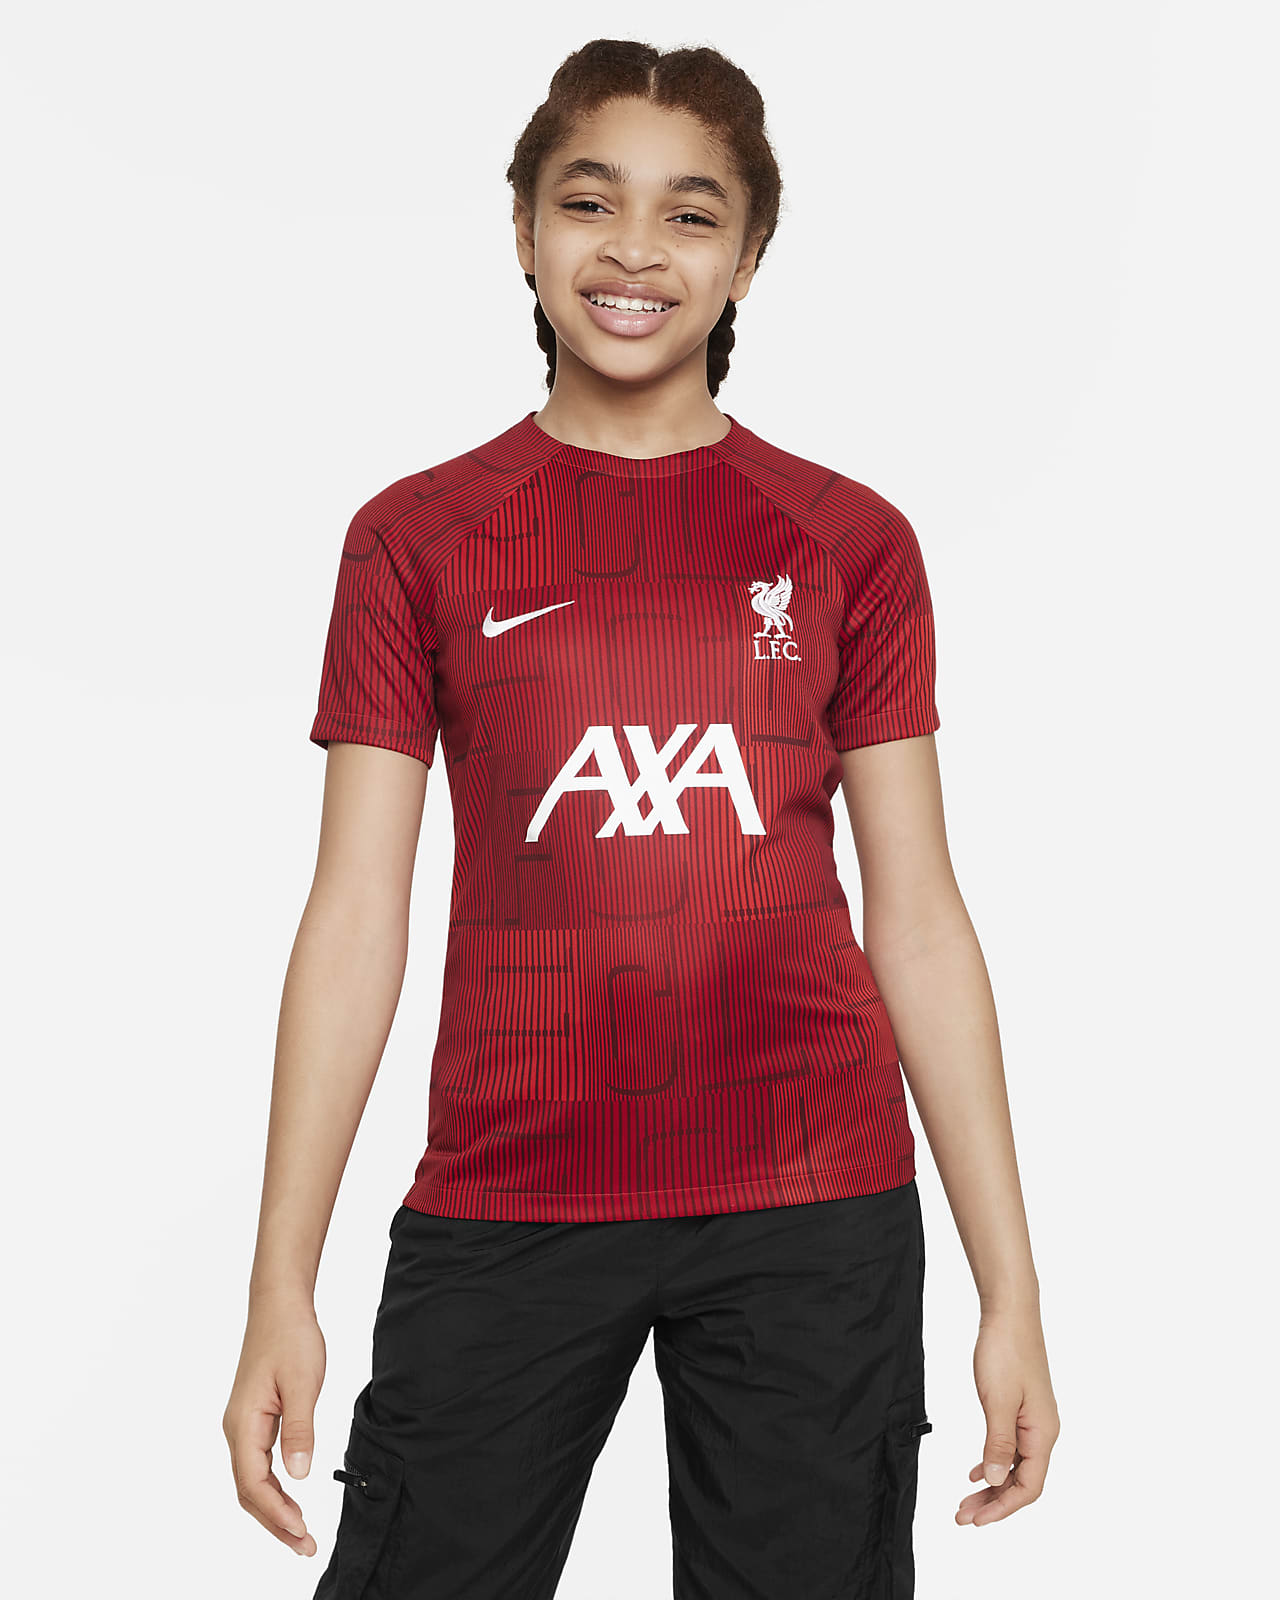 Ποδοσφαιρική μπλούζα προθέρμανσης Nike Dri-FIT Λίβερπουλ Academy Pro για μεγάλα παιδιά